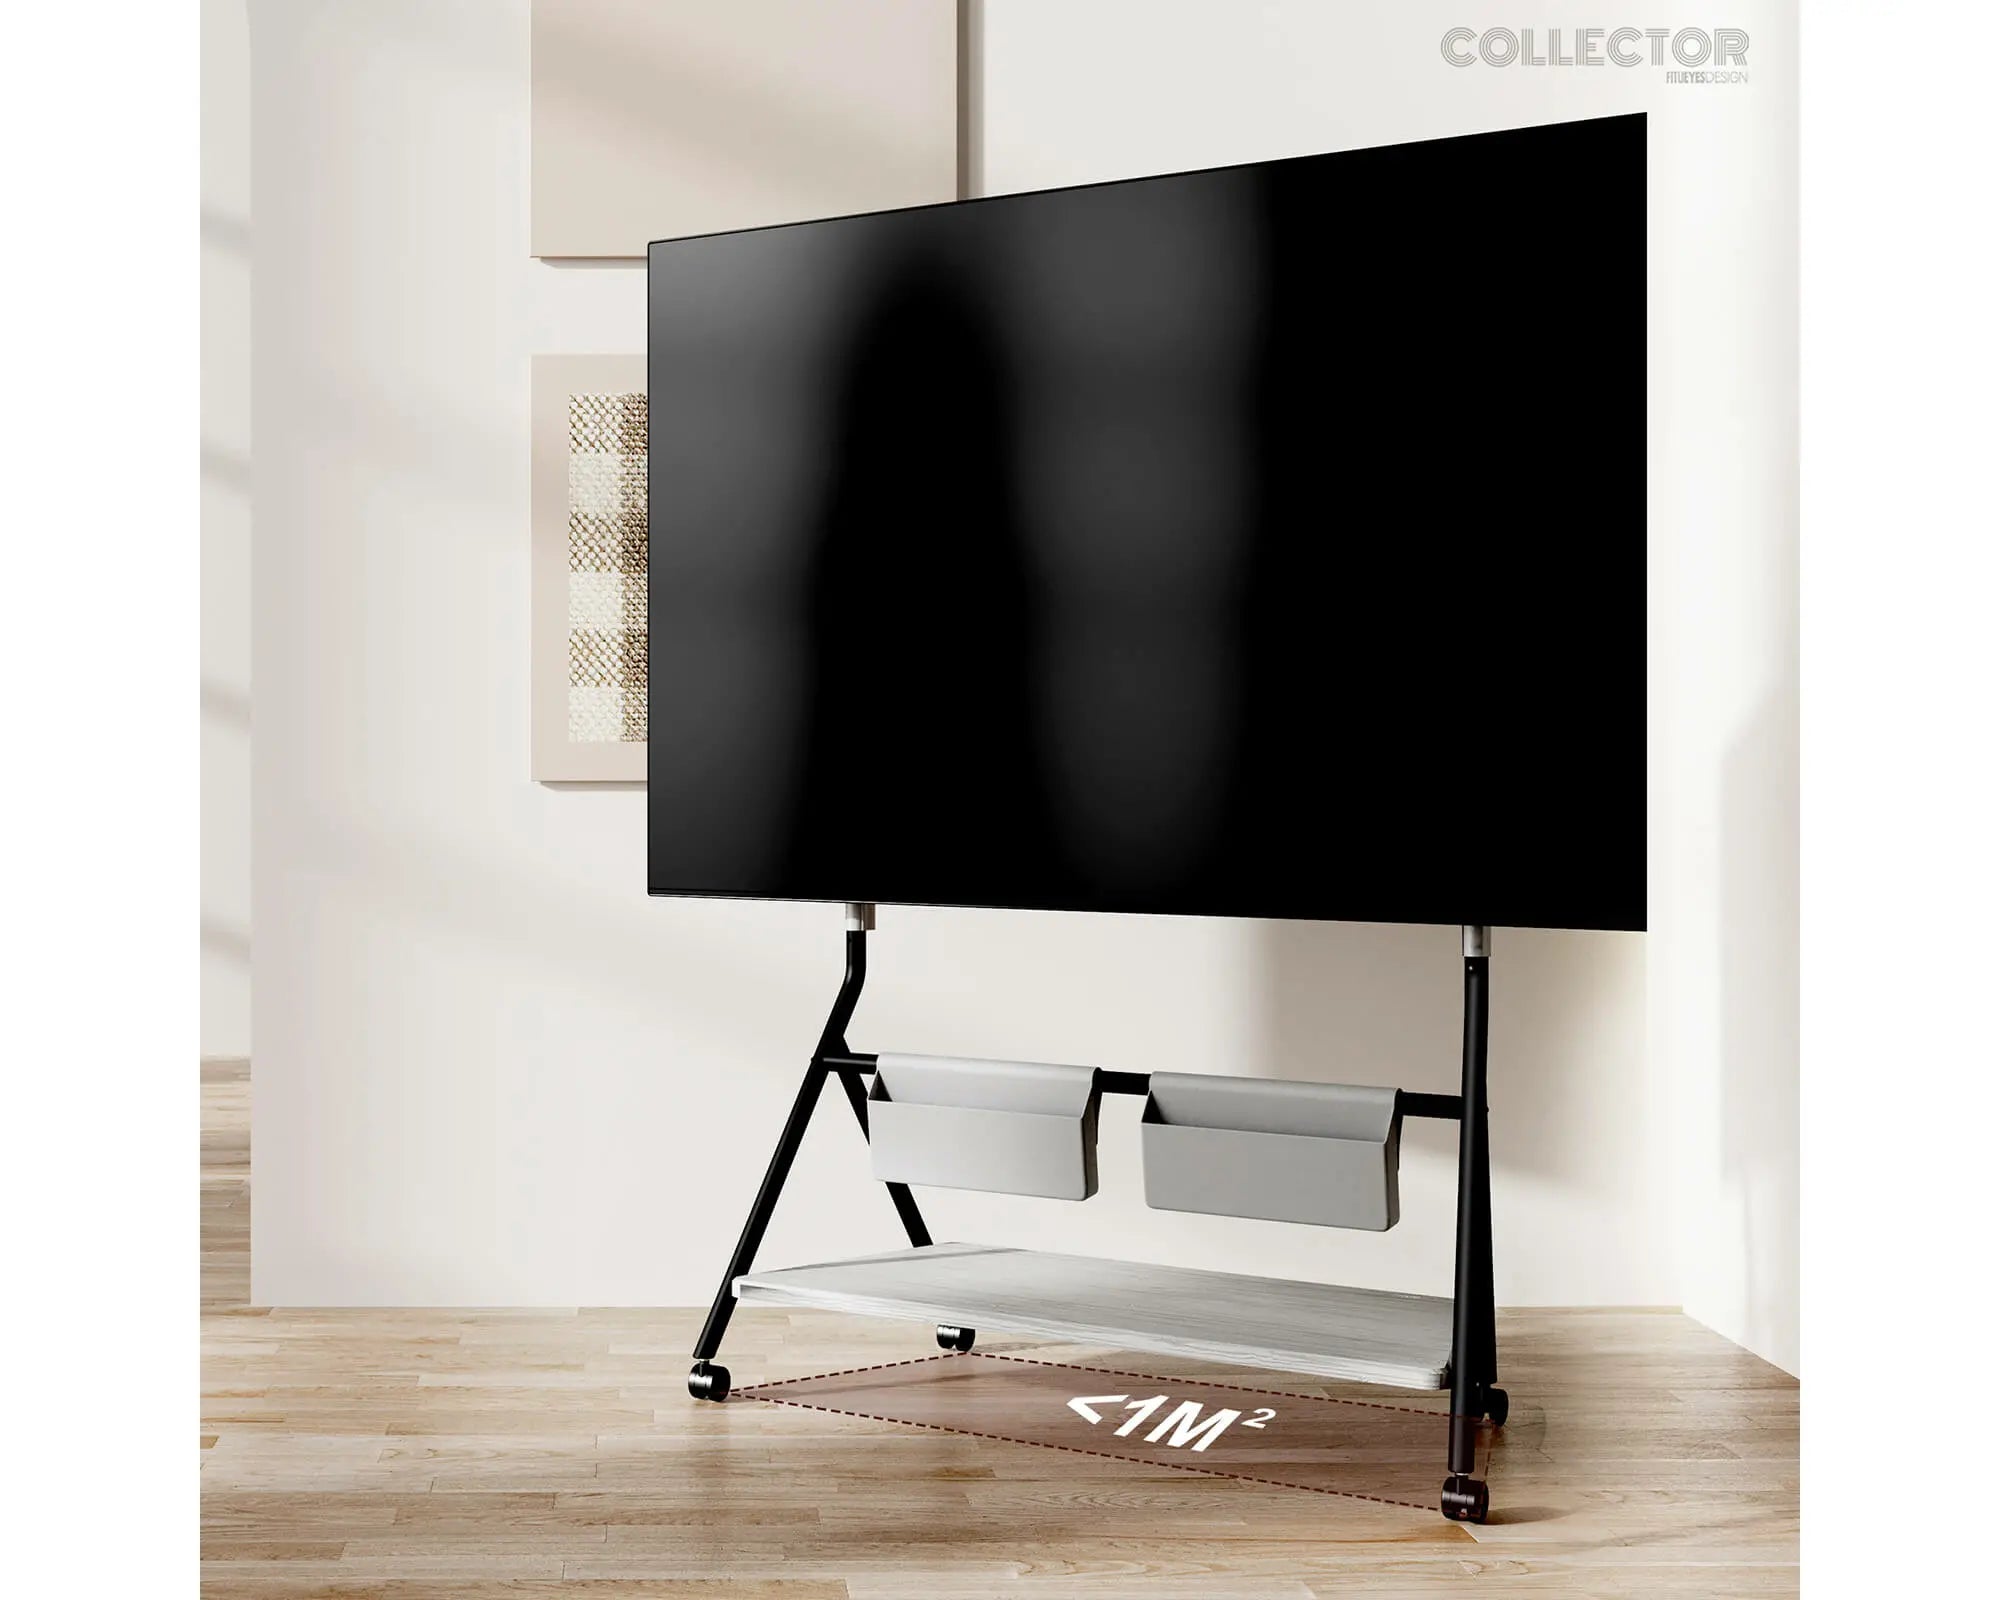 Vloer TV-standaard Collector-serie voor 65-88 inch